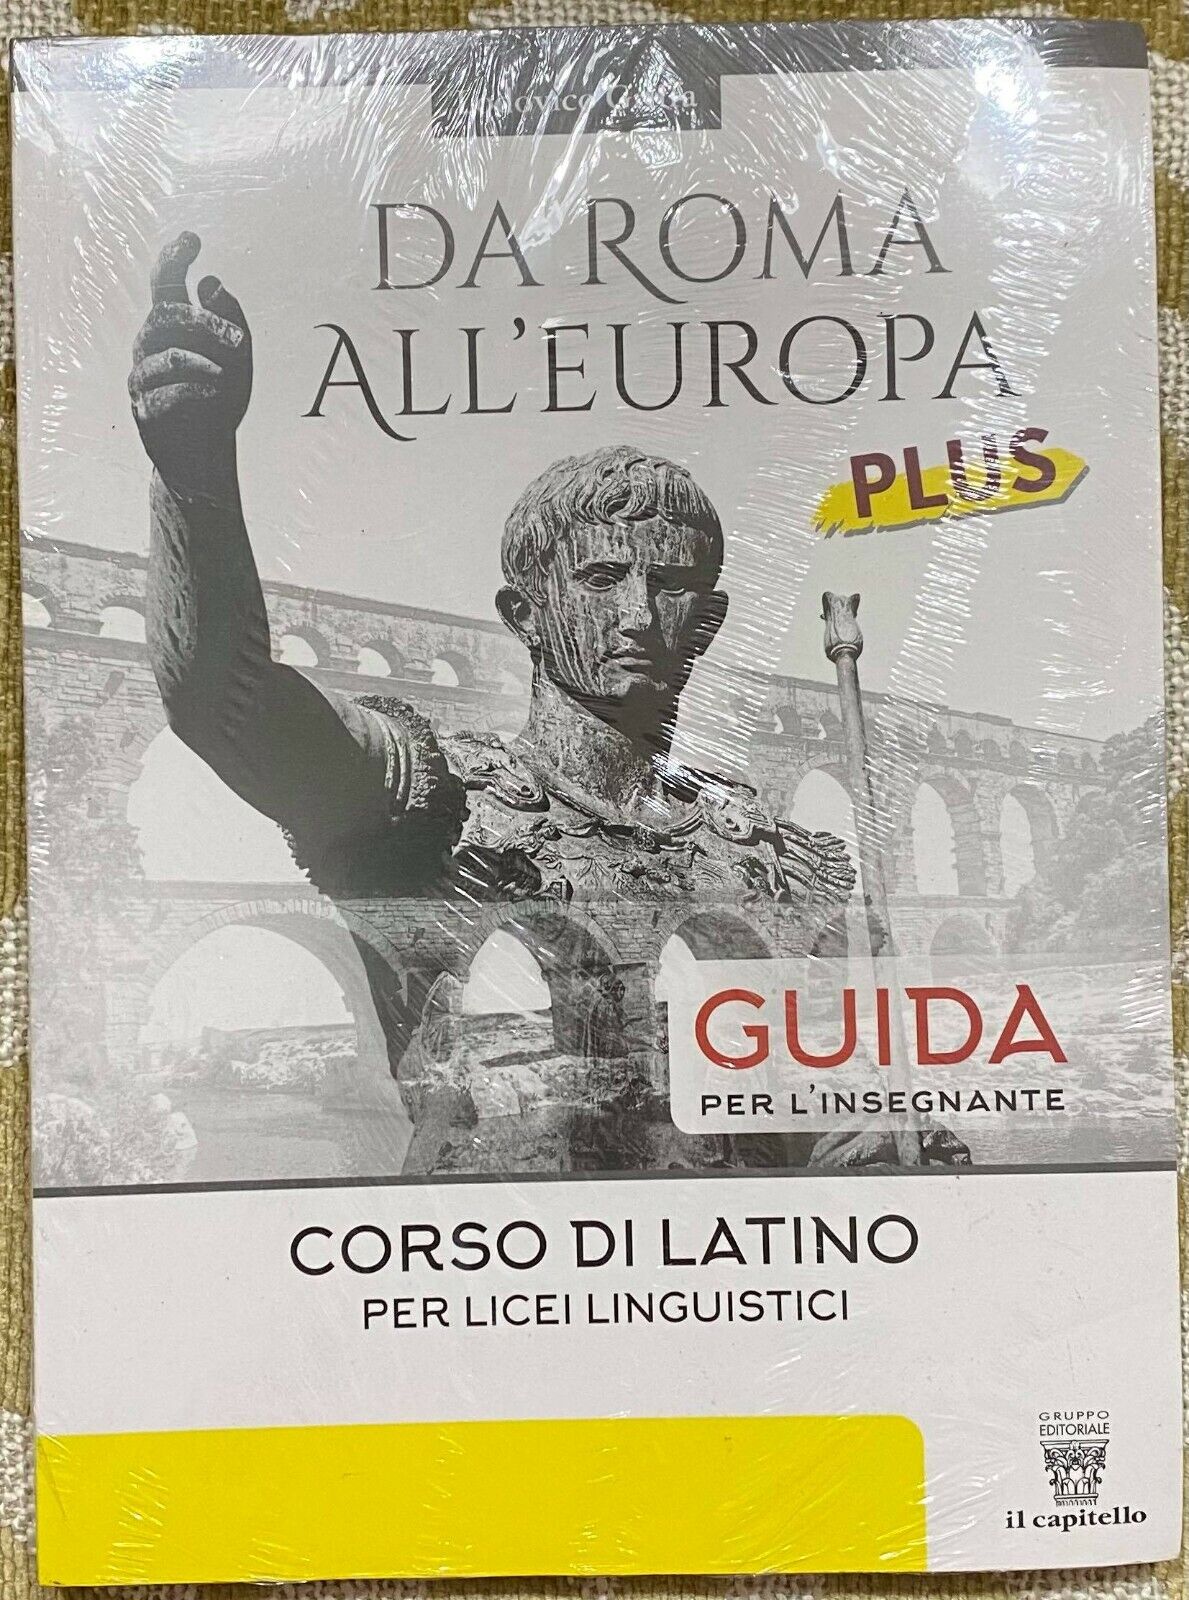 Da Roma all'Europa - Lodovico Griffa - Il capitello - 2019 - M